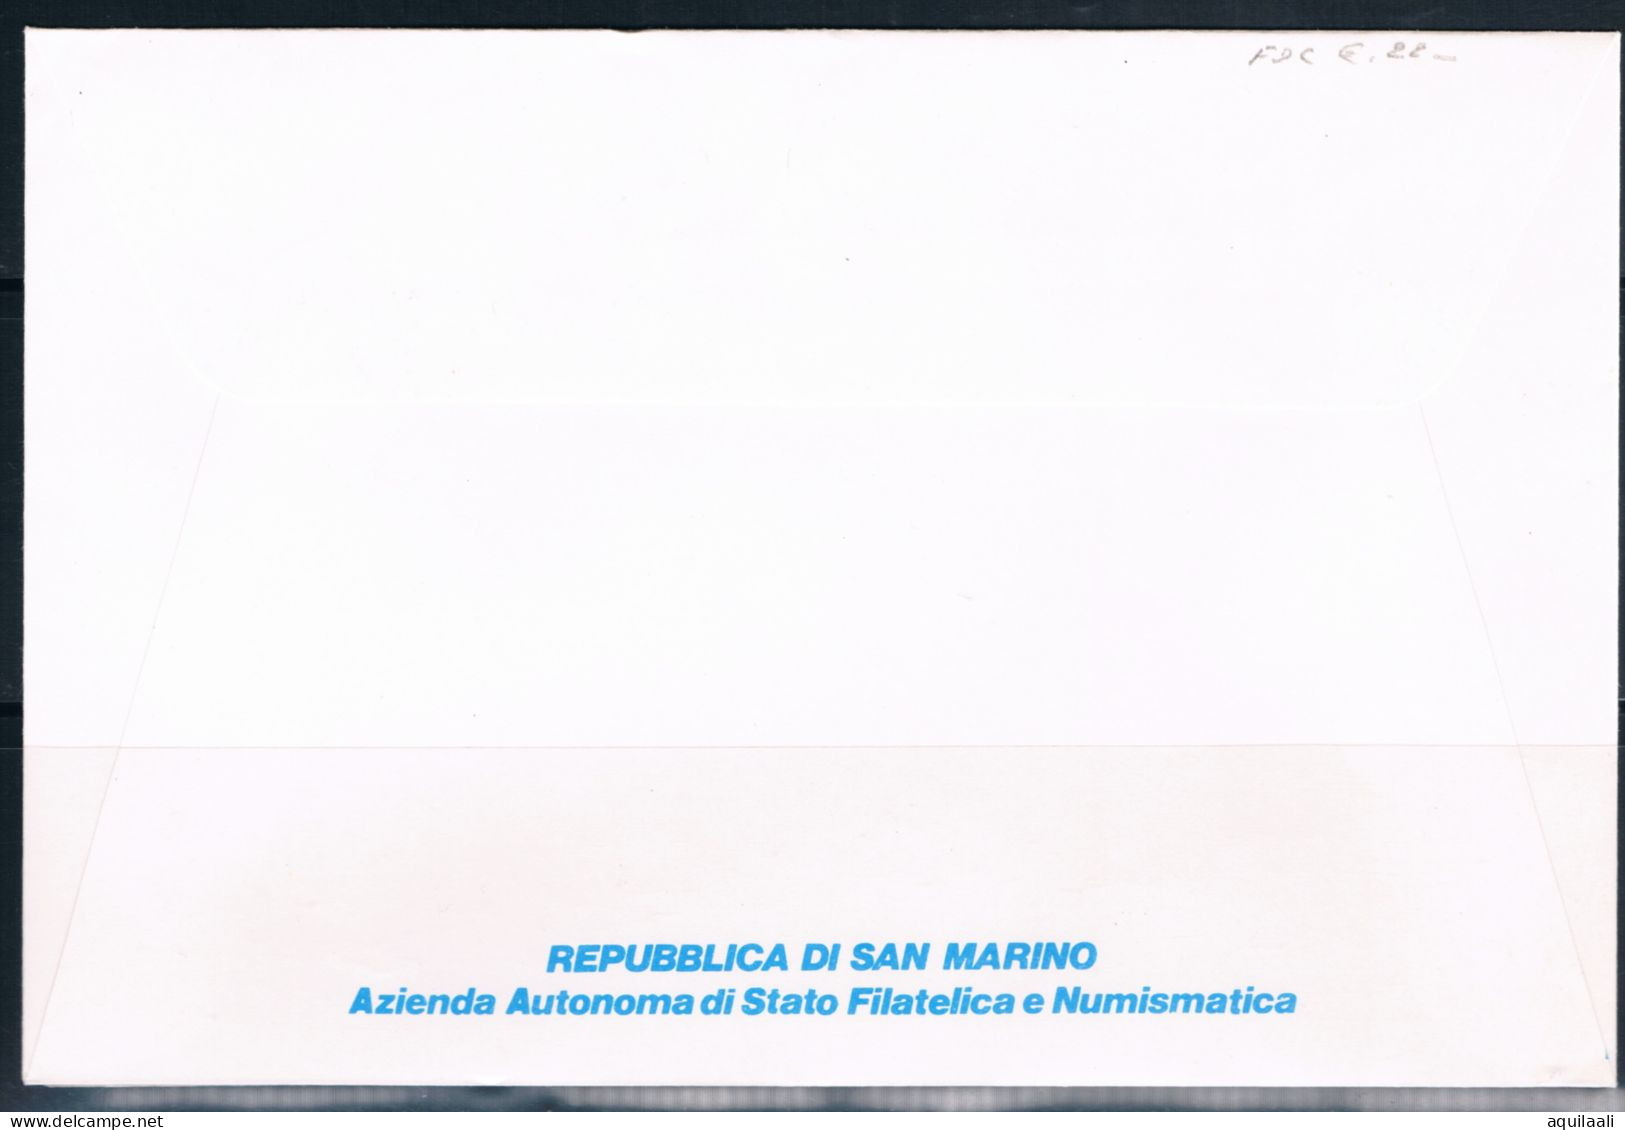 SAN MARINO 1994 -  Expo Filatelico "39' Bophilex ", Annullo Speciale. - Briefmarkenausstellungen